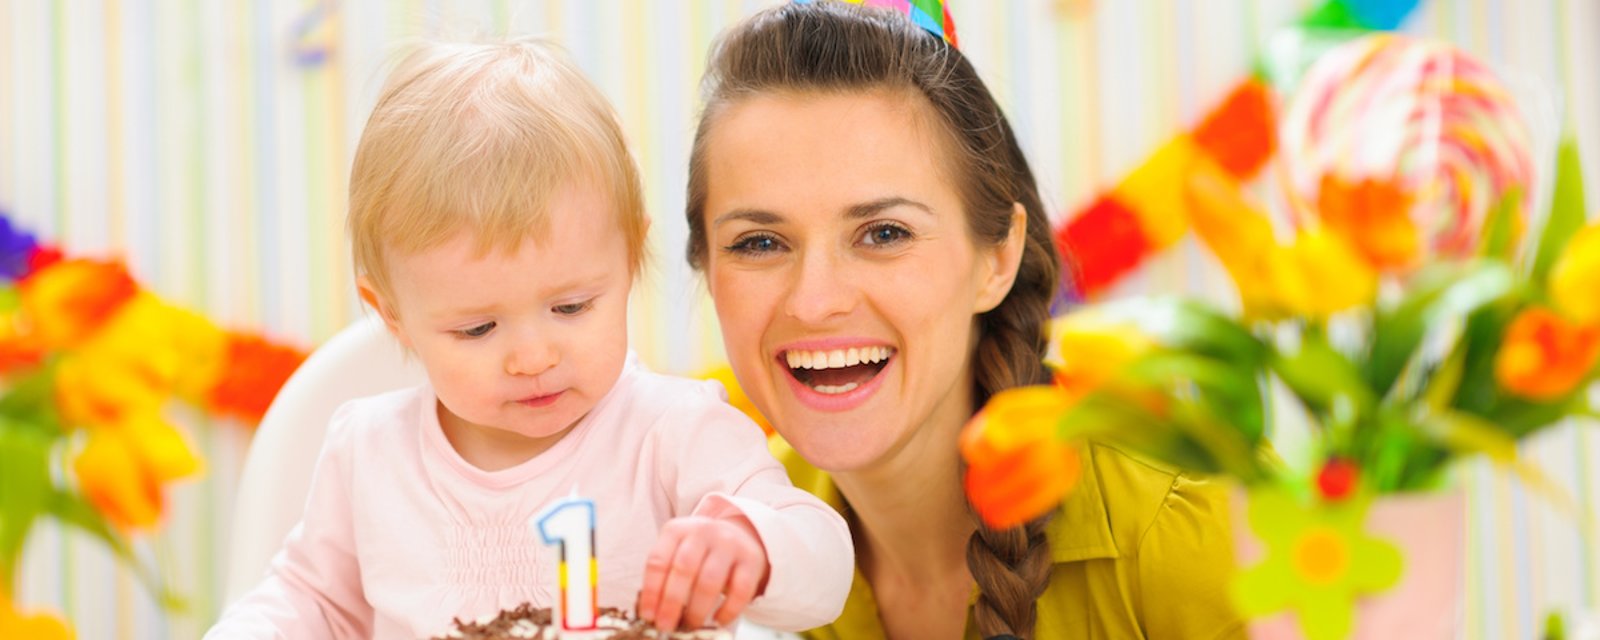 La science explique pourquoi plusieurs mamans partagent leur mois de naissance avec leur bébé